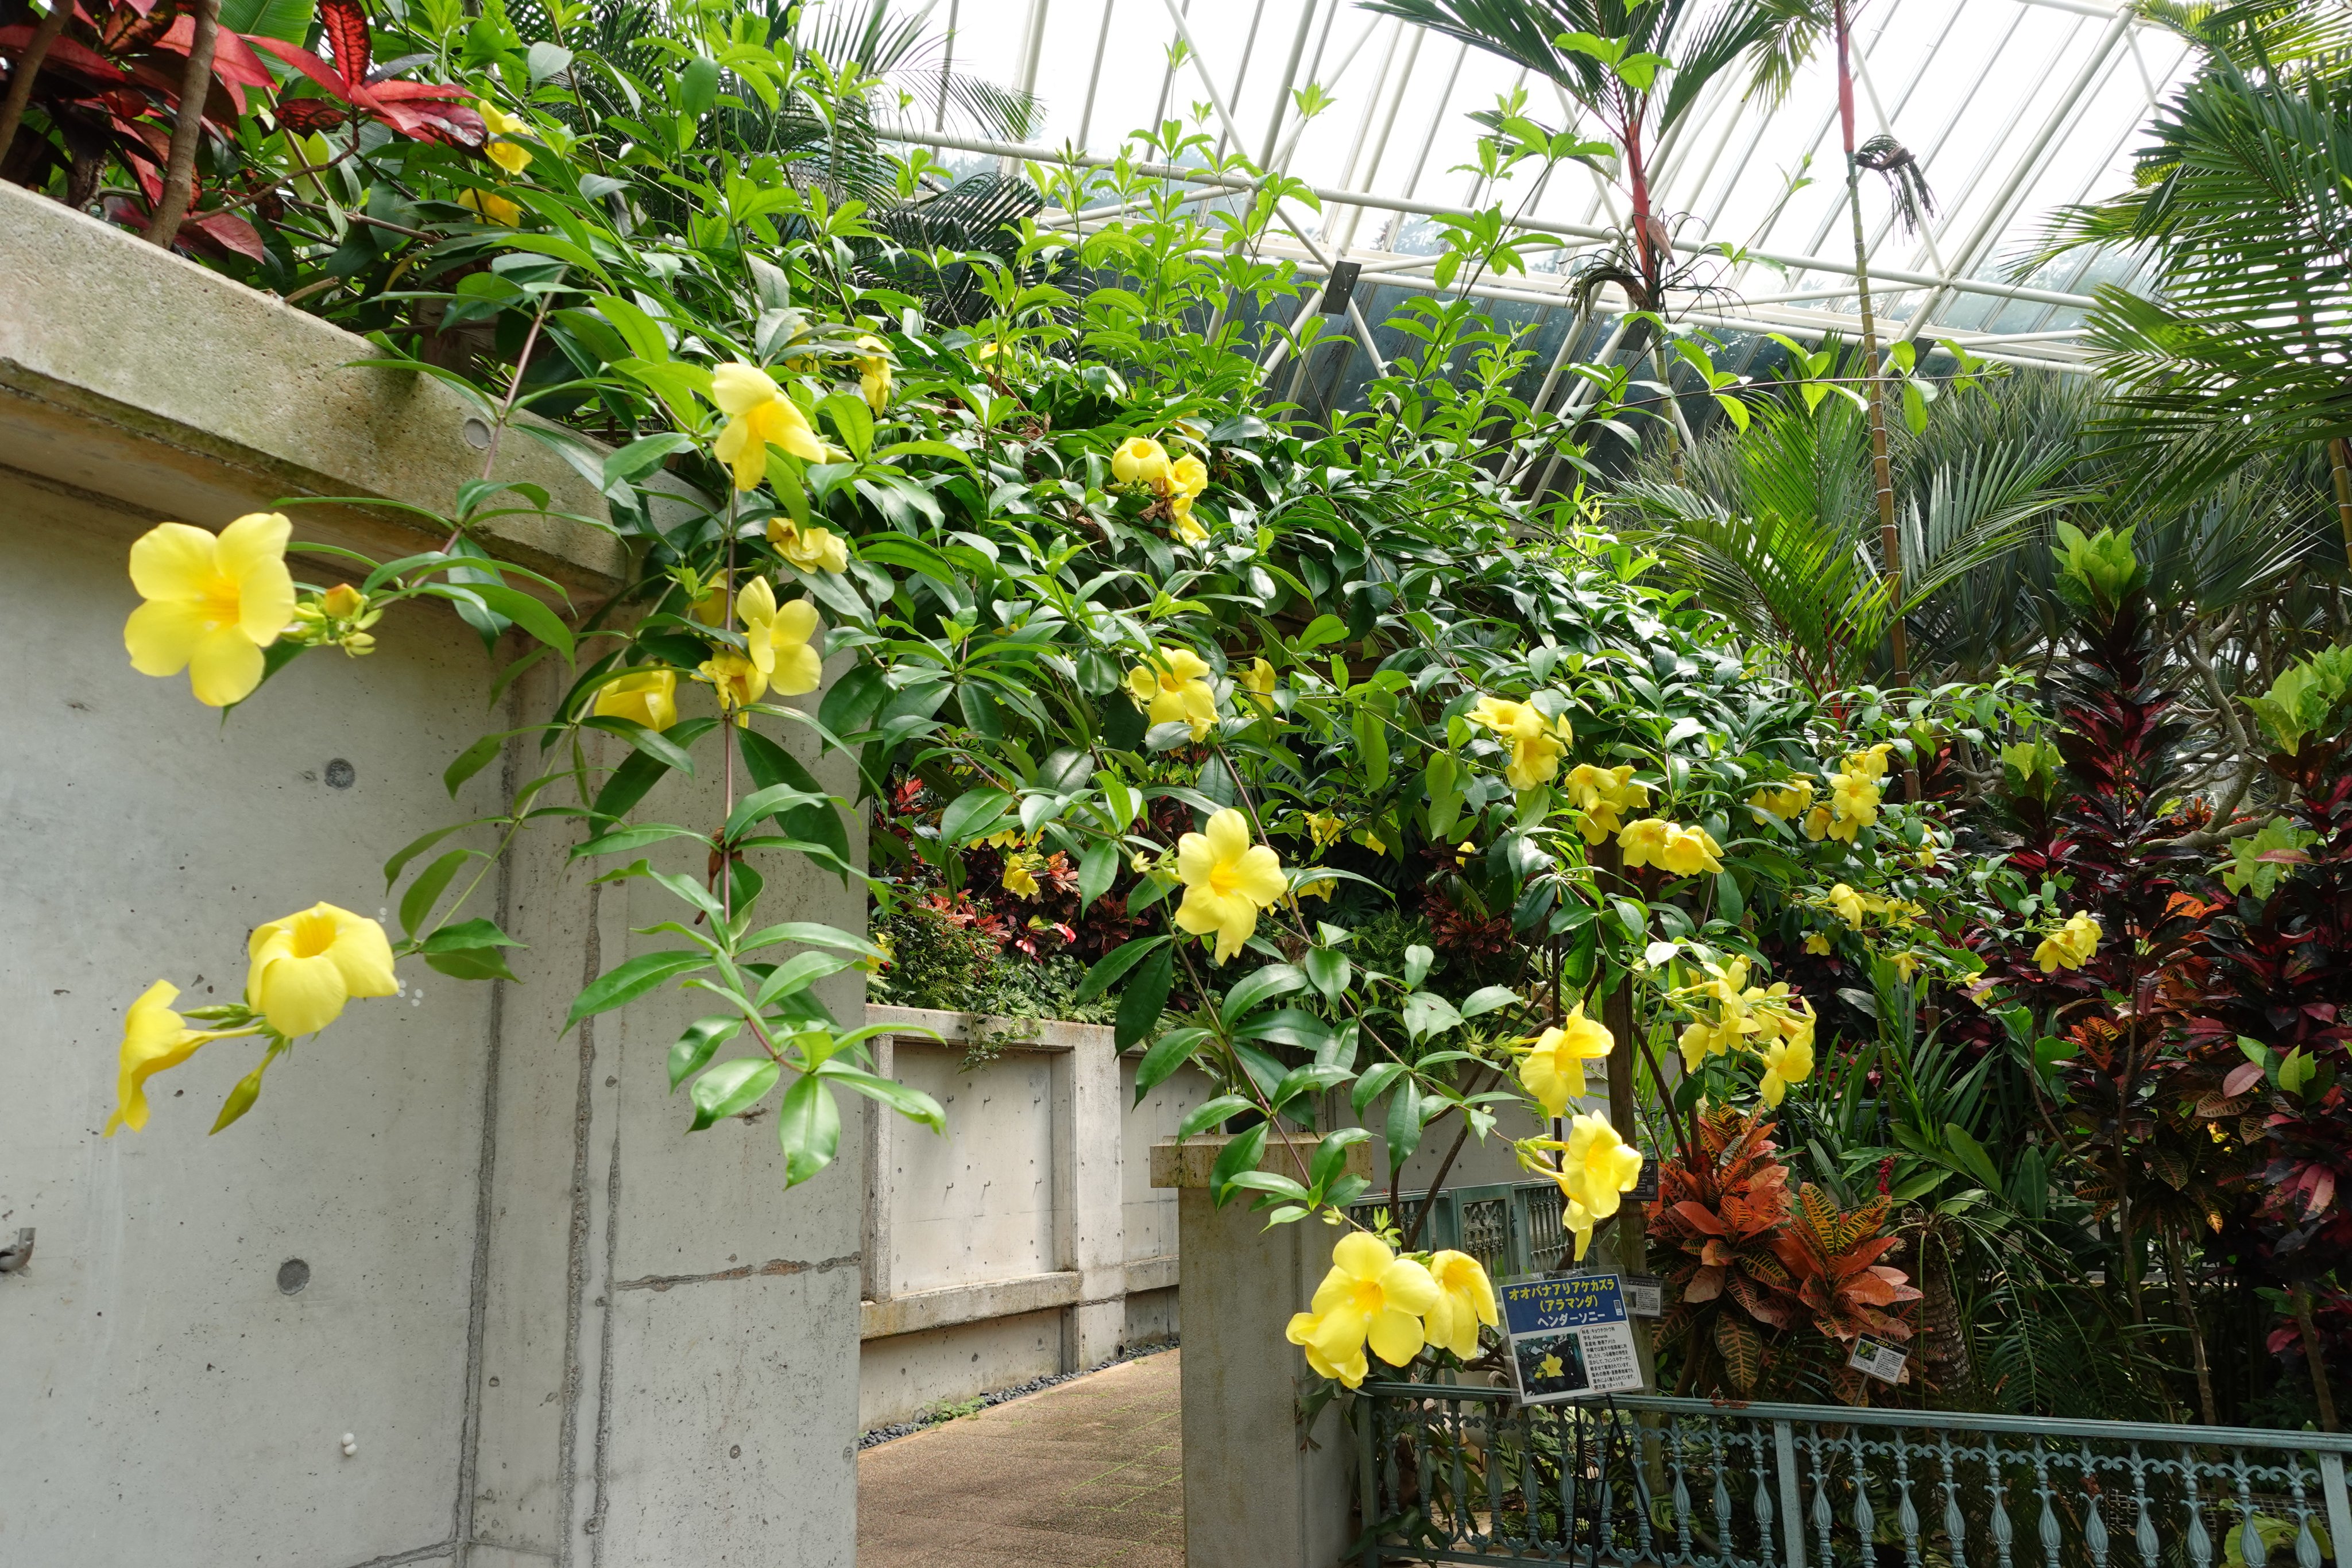 Twitter এ フラワーパークかごしま 温室で鮮やかな黄色の大輪の花を咲かせているオオバナアリアケカズラ 熱帯アメリカ原産のつる植物アラマンダの仲間で大輪の品種です オオバナアリアケカズラ アラマンダ フラワーパークかごしま 指宿 T Co Fwuhzotmsk